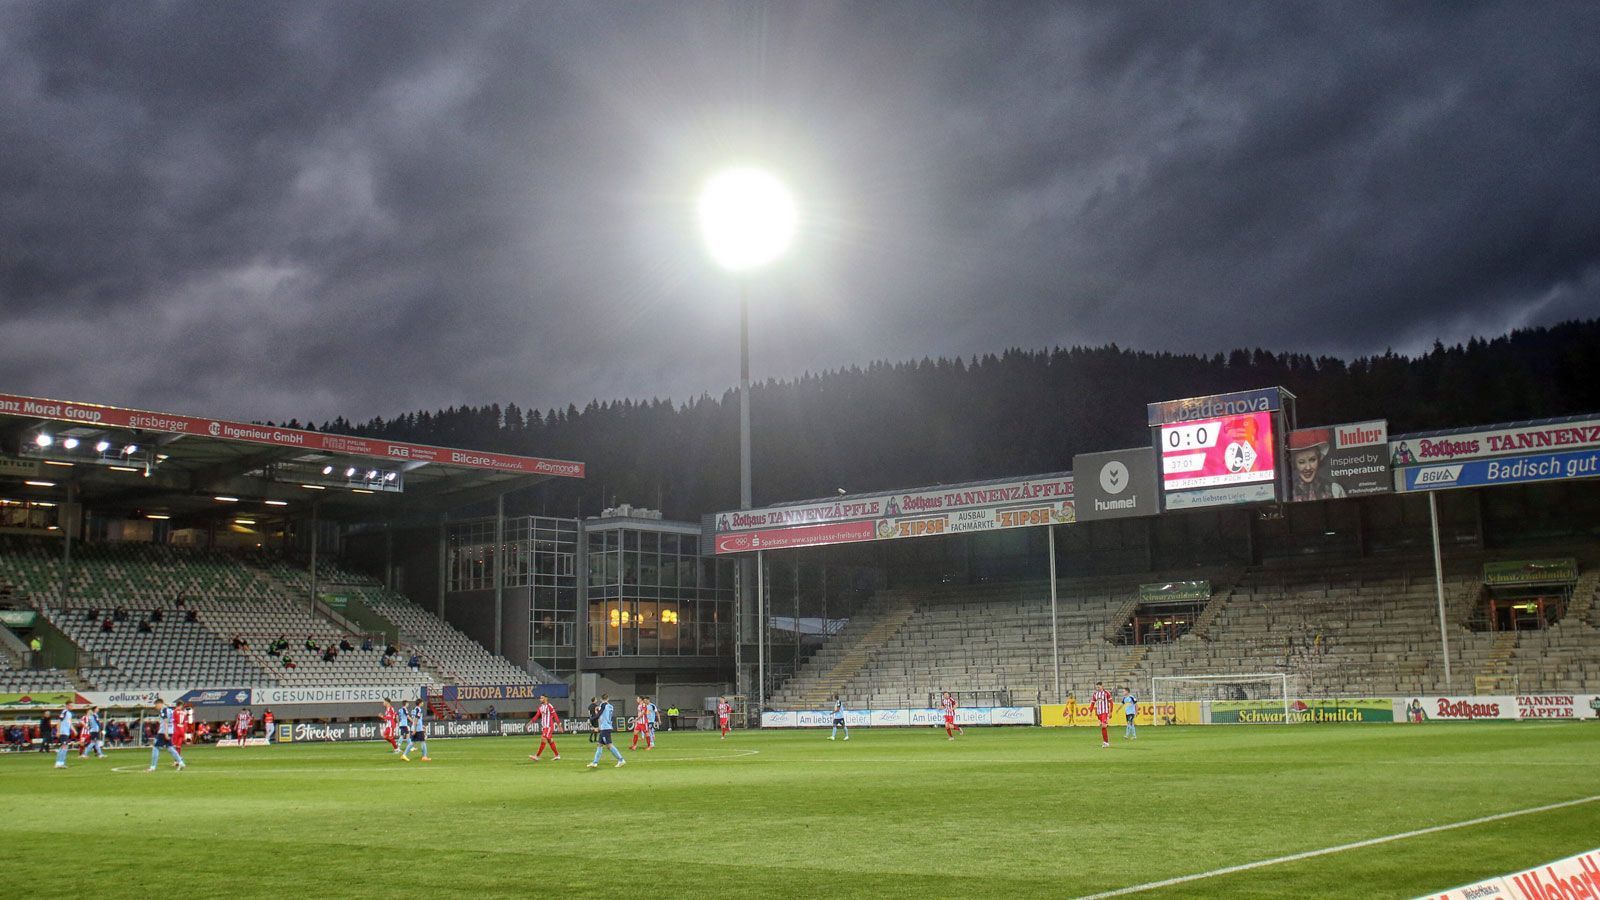 
                <strong>SC Freiburg</strong><br>
                Stadion: Schwarzwald-StadionKapazität: 24.000Vorgehen: Regelung steht noch aus (Stand: 13. August)
              